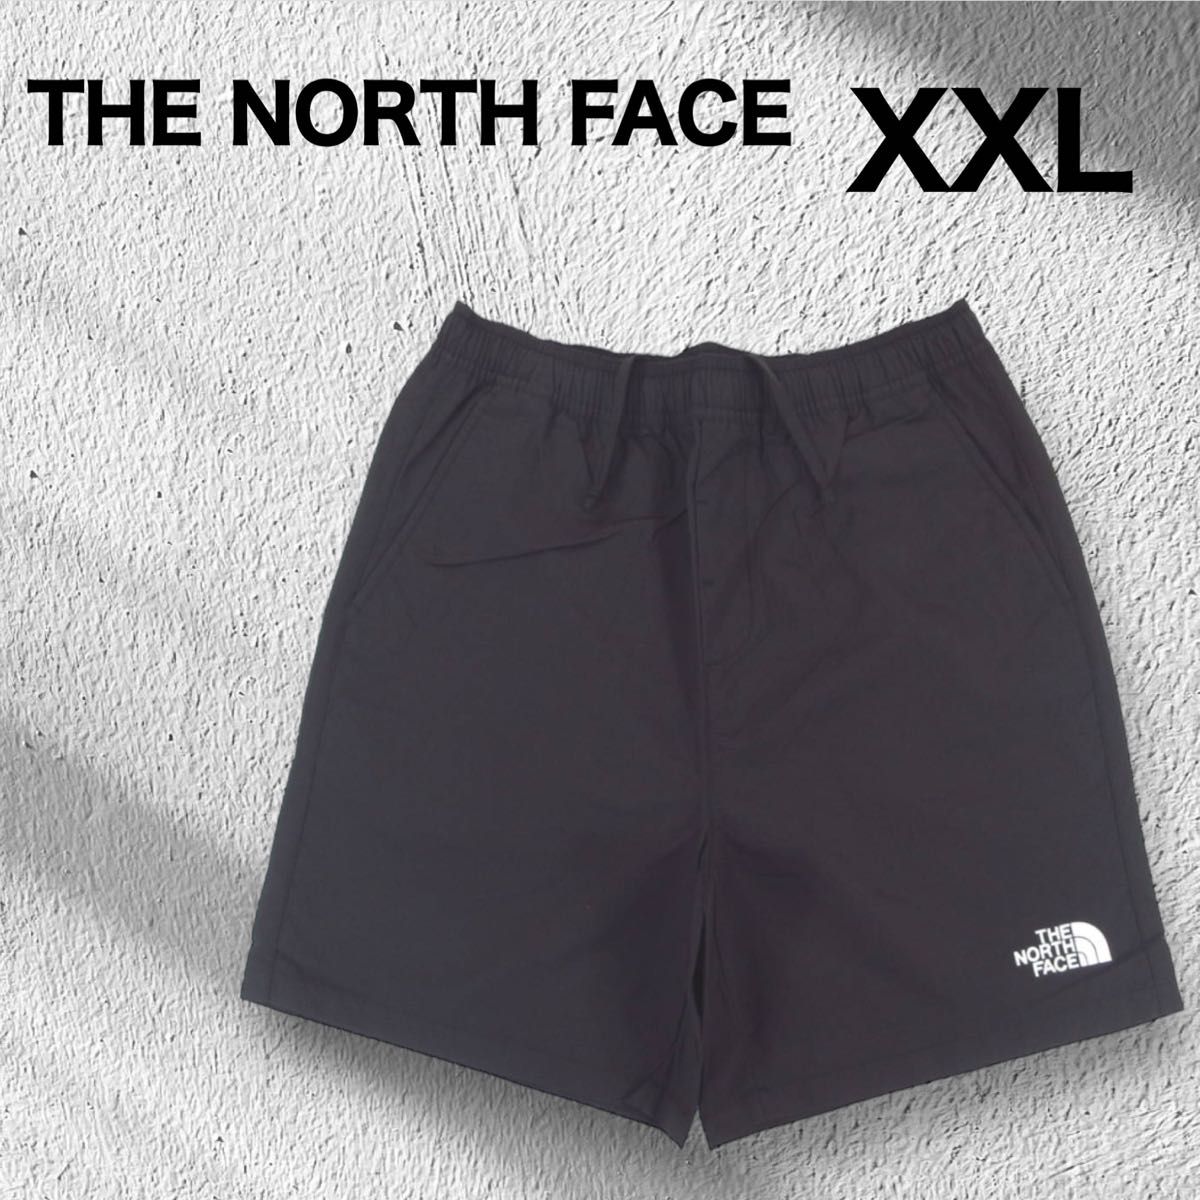 ノースフェイス  パンツ XXL ブラック ハーフパンツ 韓国限定 ショートパンツ THE FACE スポーツ 黒